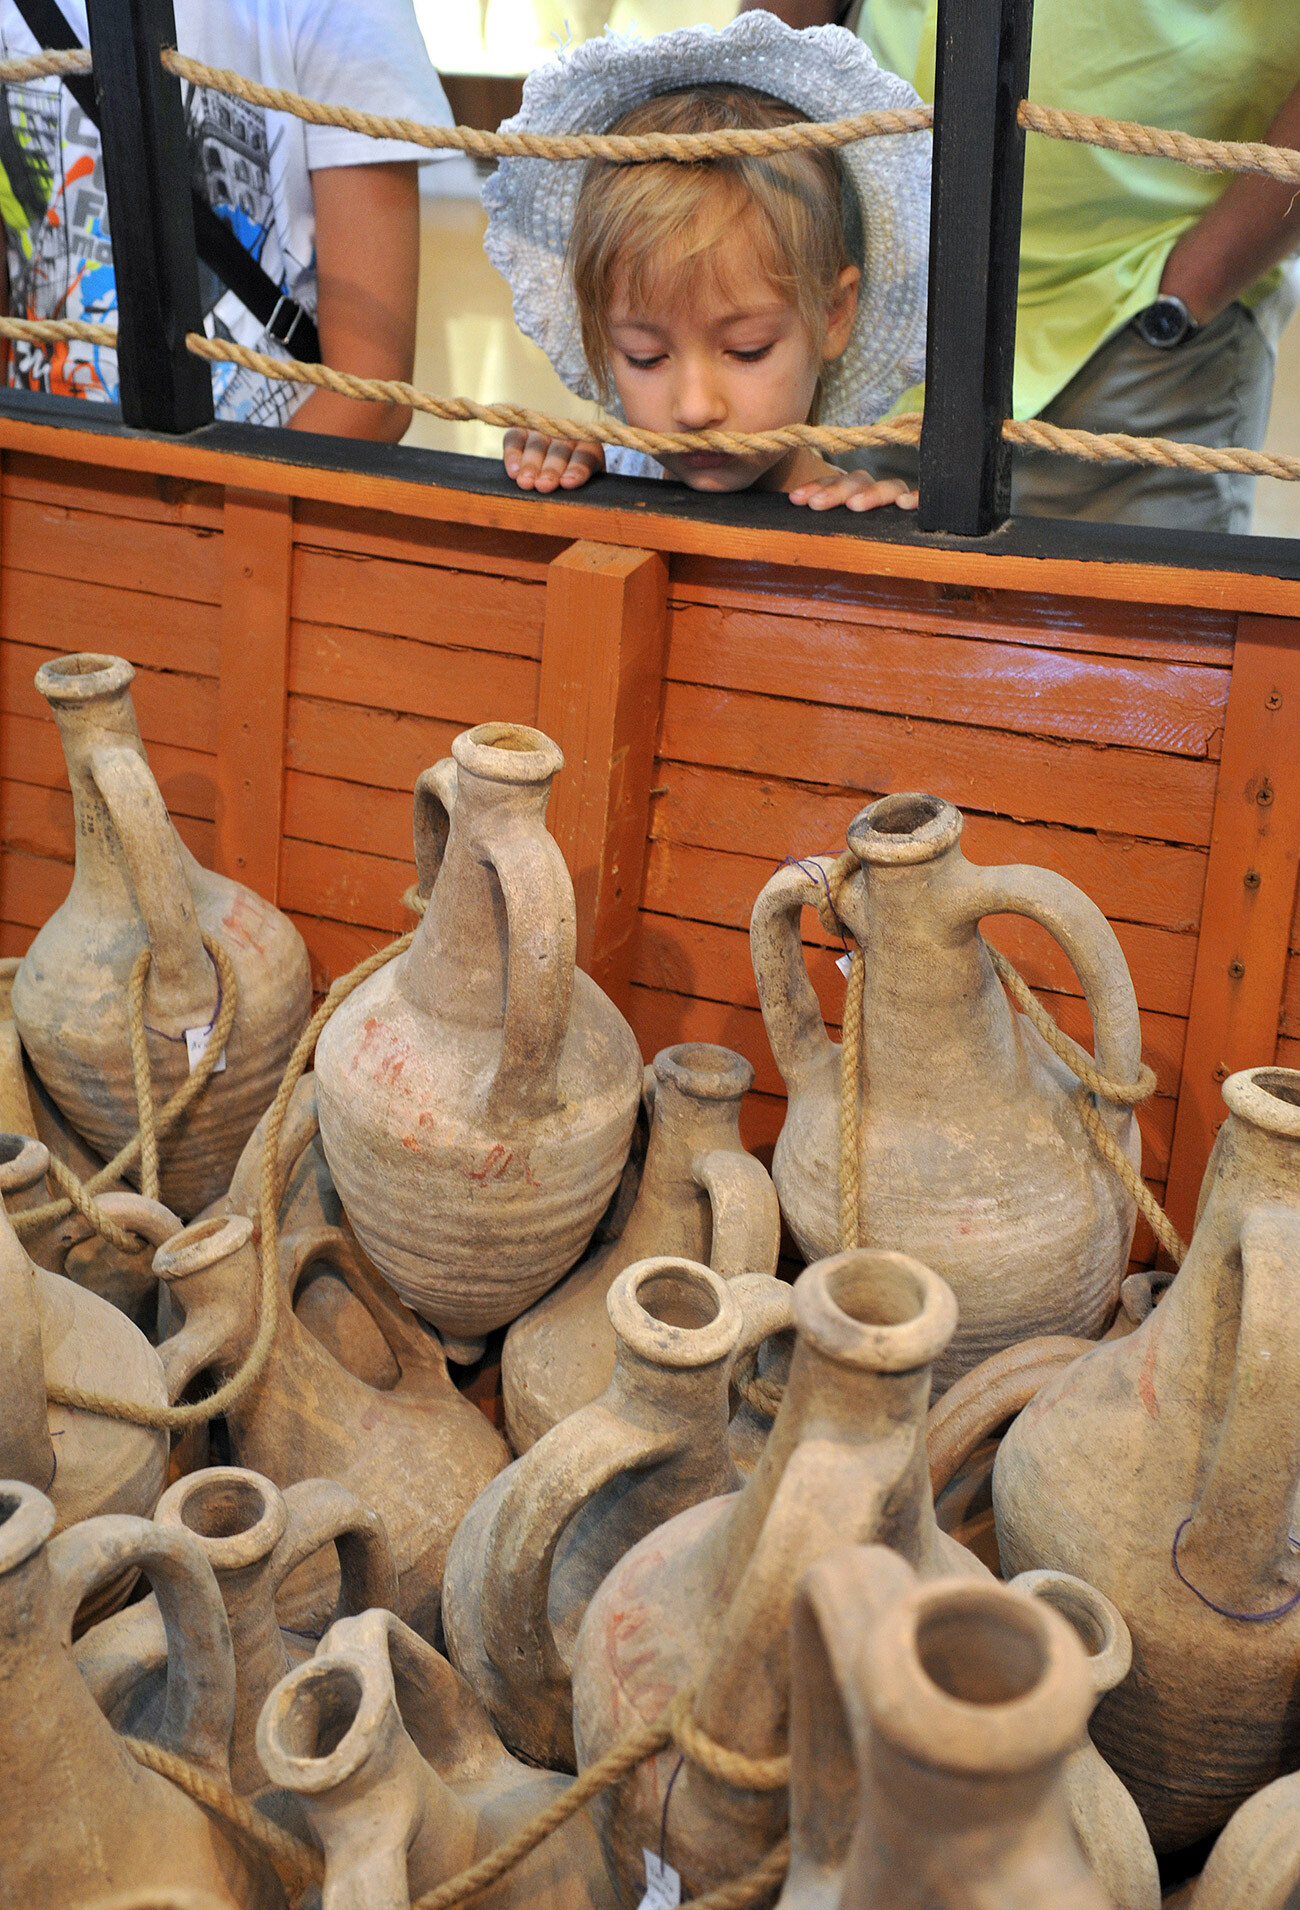 El Museo de Tanais conserva numerosas ánforas de arcilla halladas durante las excavaciones.

